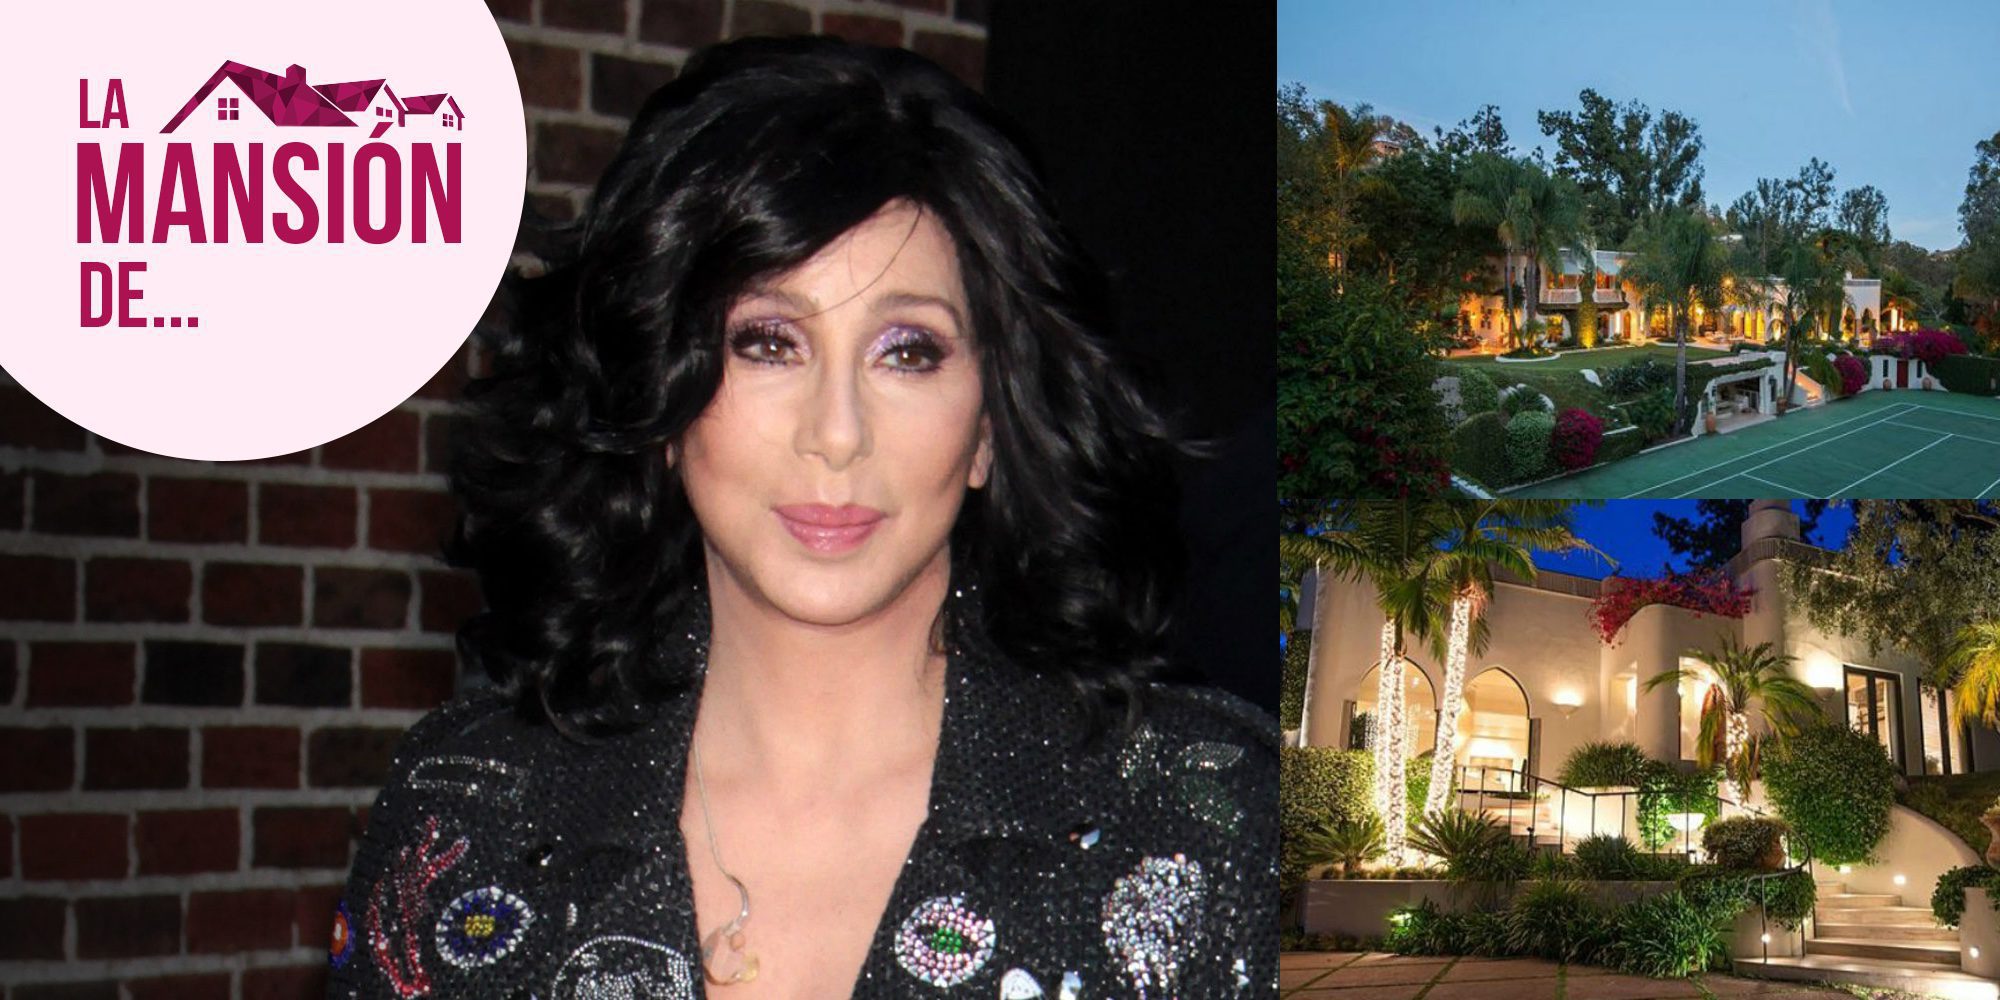 Caballerizas, piscina y pista de tenis: así es la mansión de Cher en Beverly Hills que vende por 85 millones